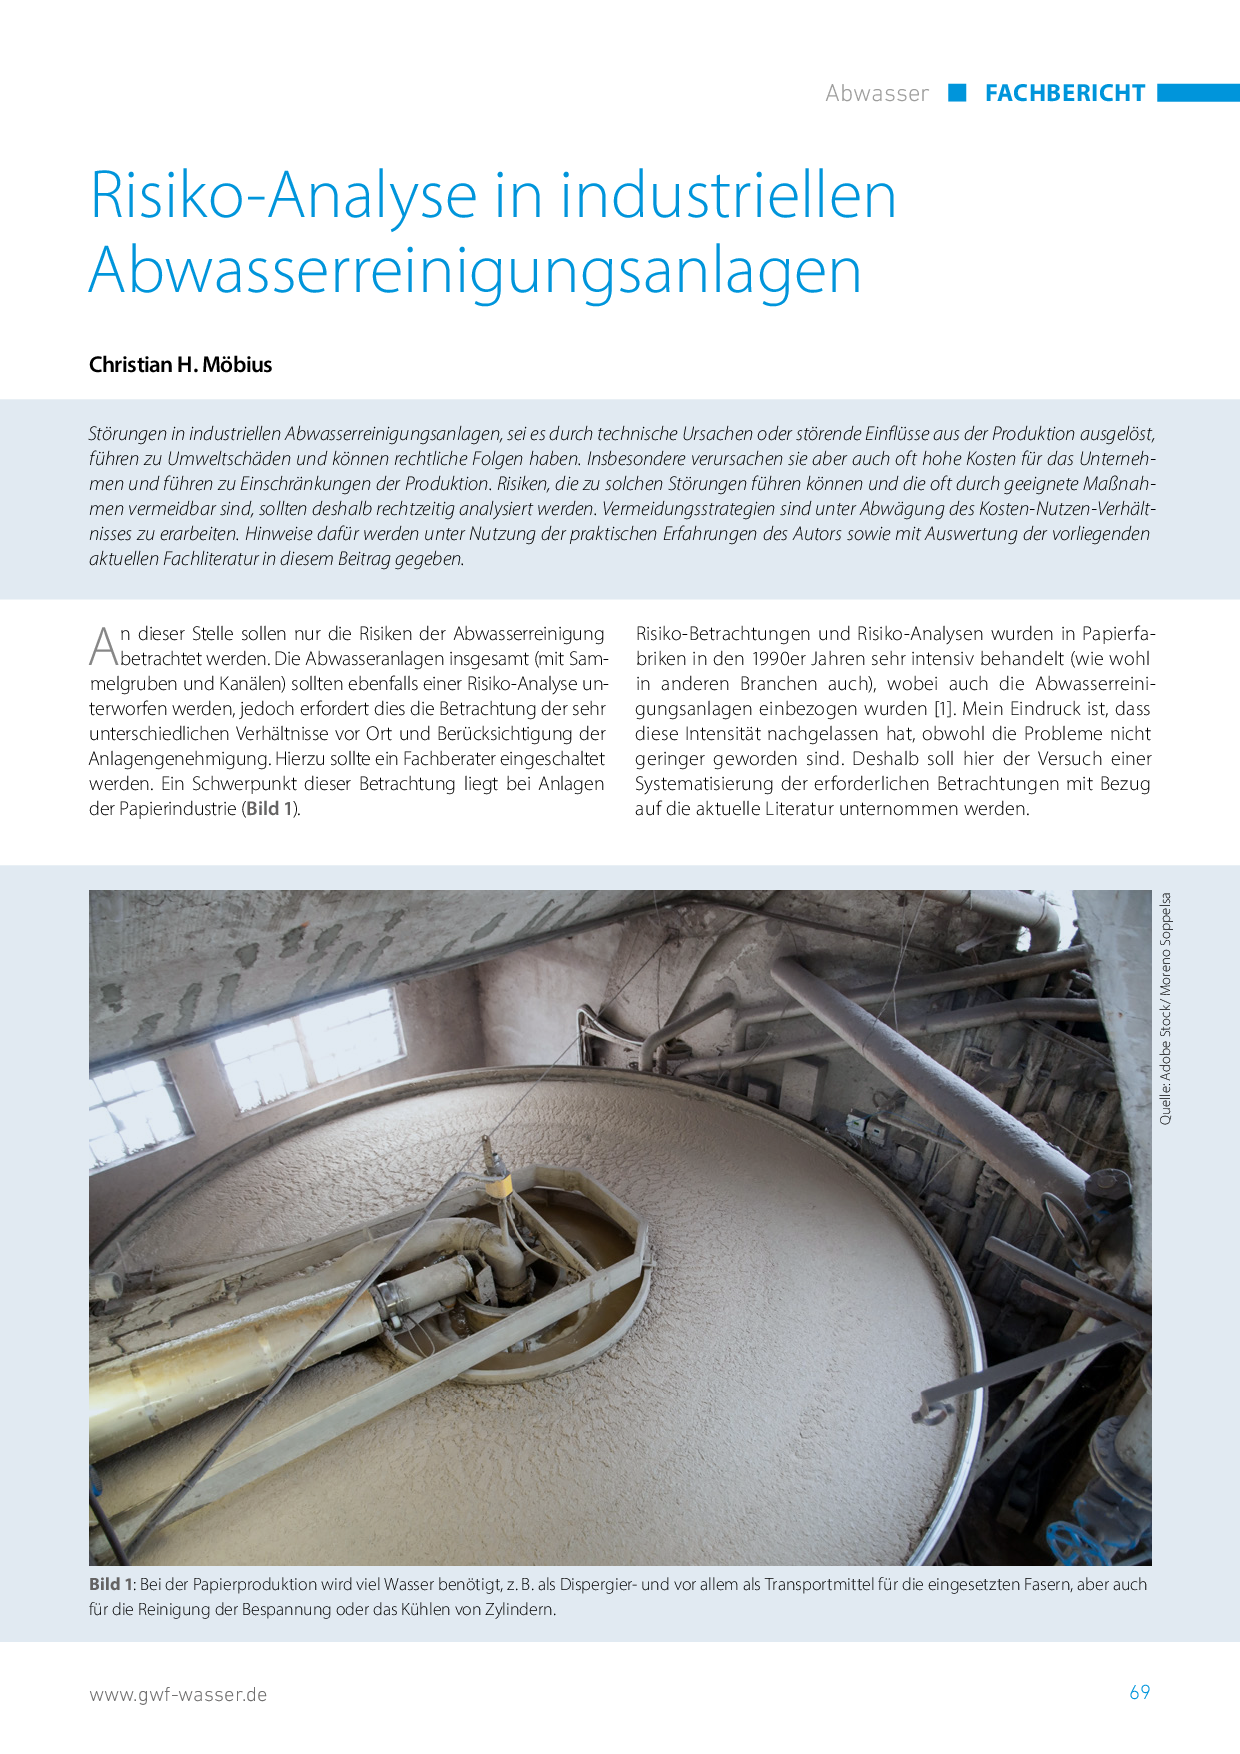 Risiko-Analyse in industriellen Abwasserreinigungsanlagen